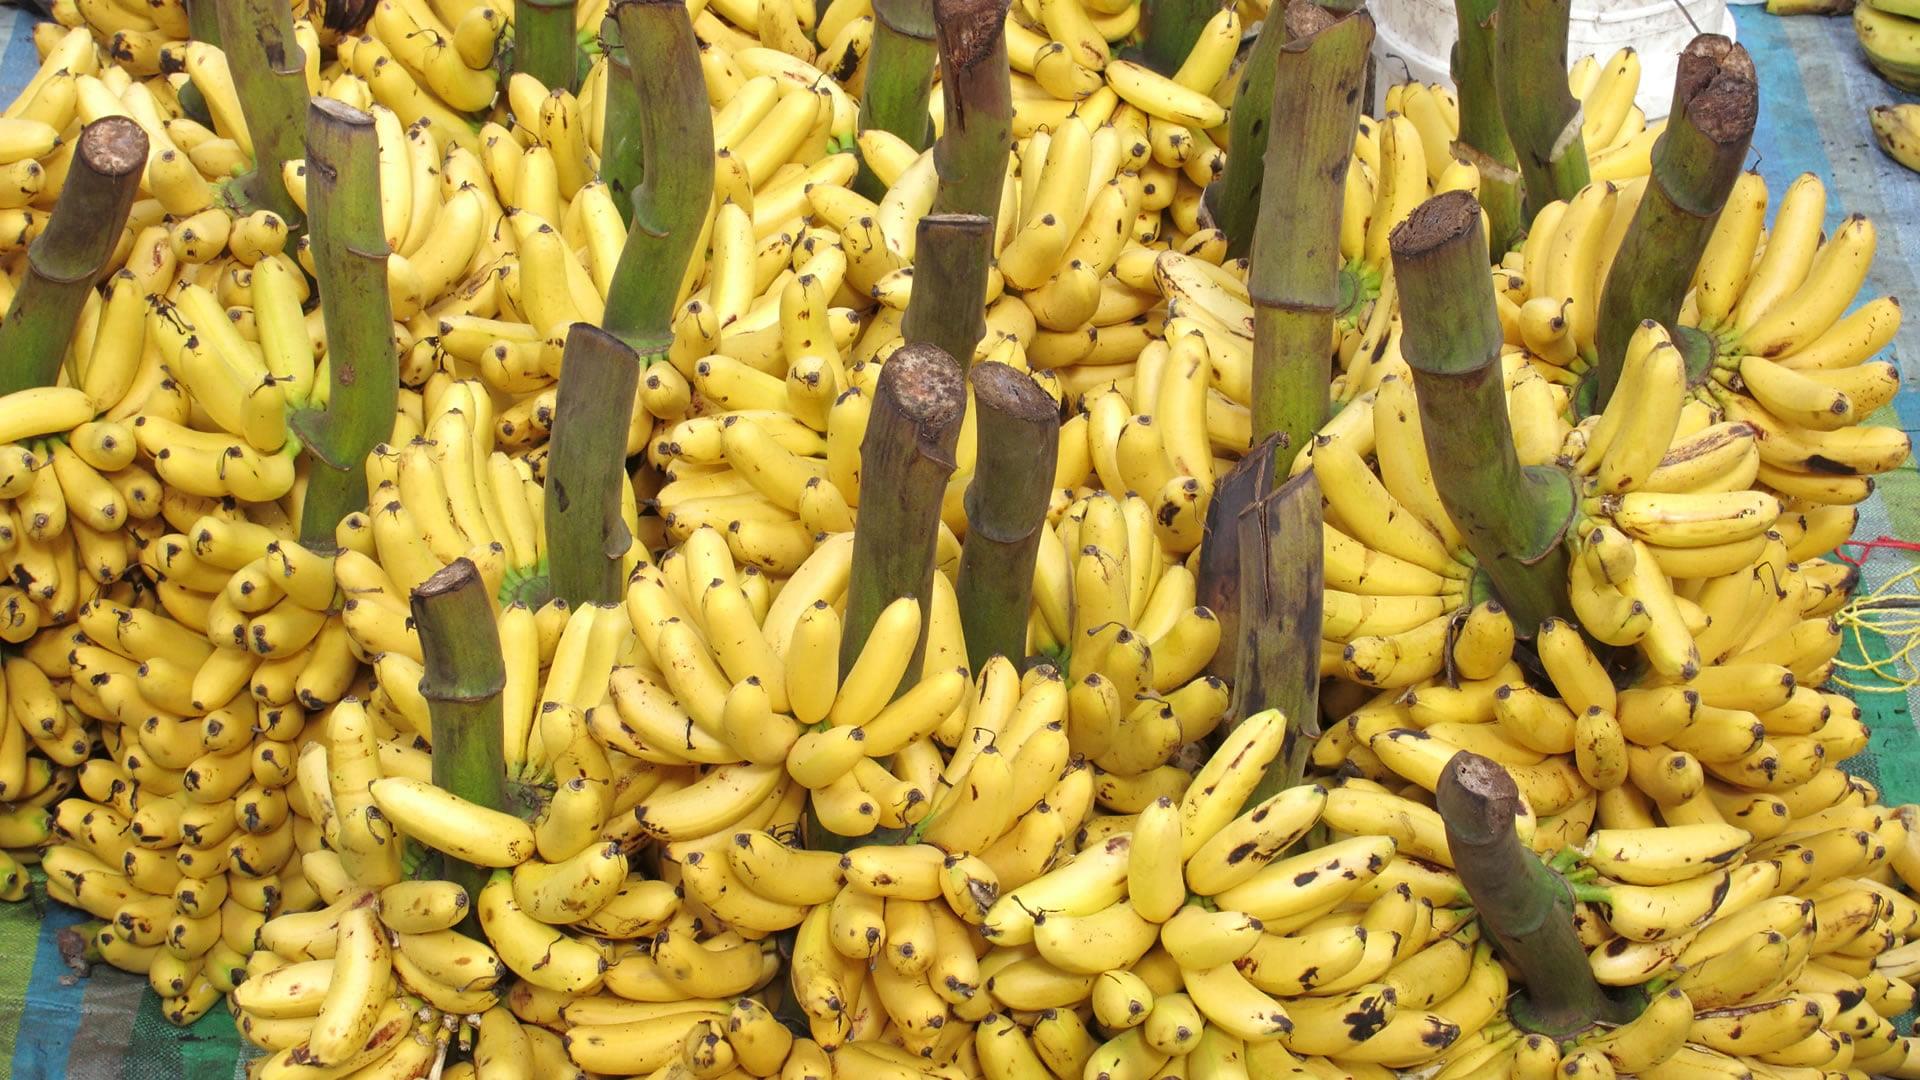  La banane d’Équateur, premier exportateur mondial, subit la guerre en Ukraine 